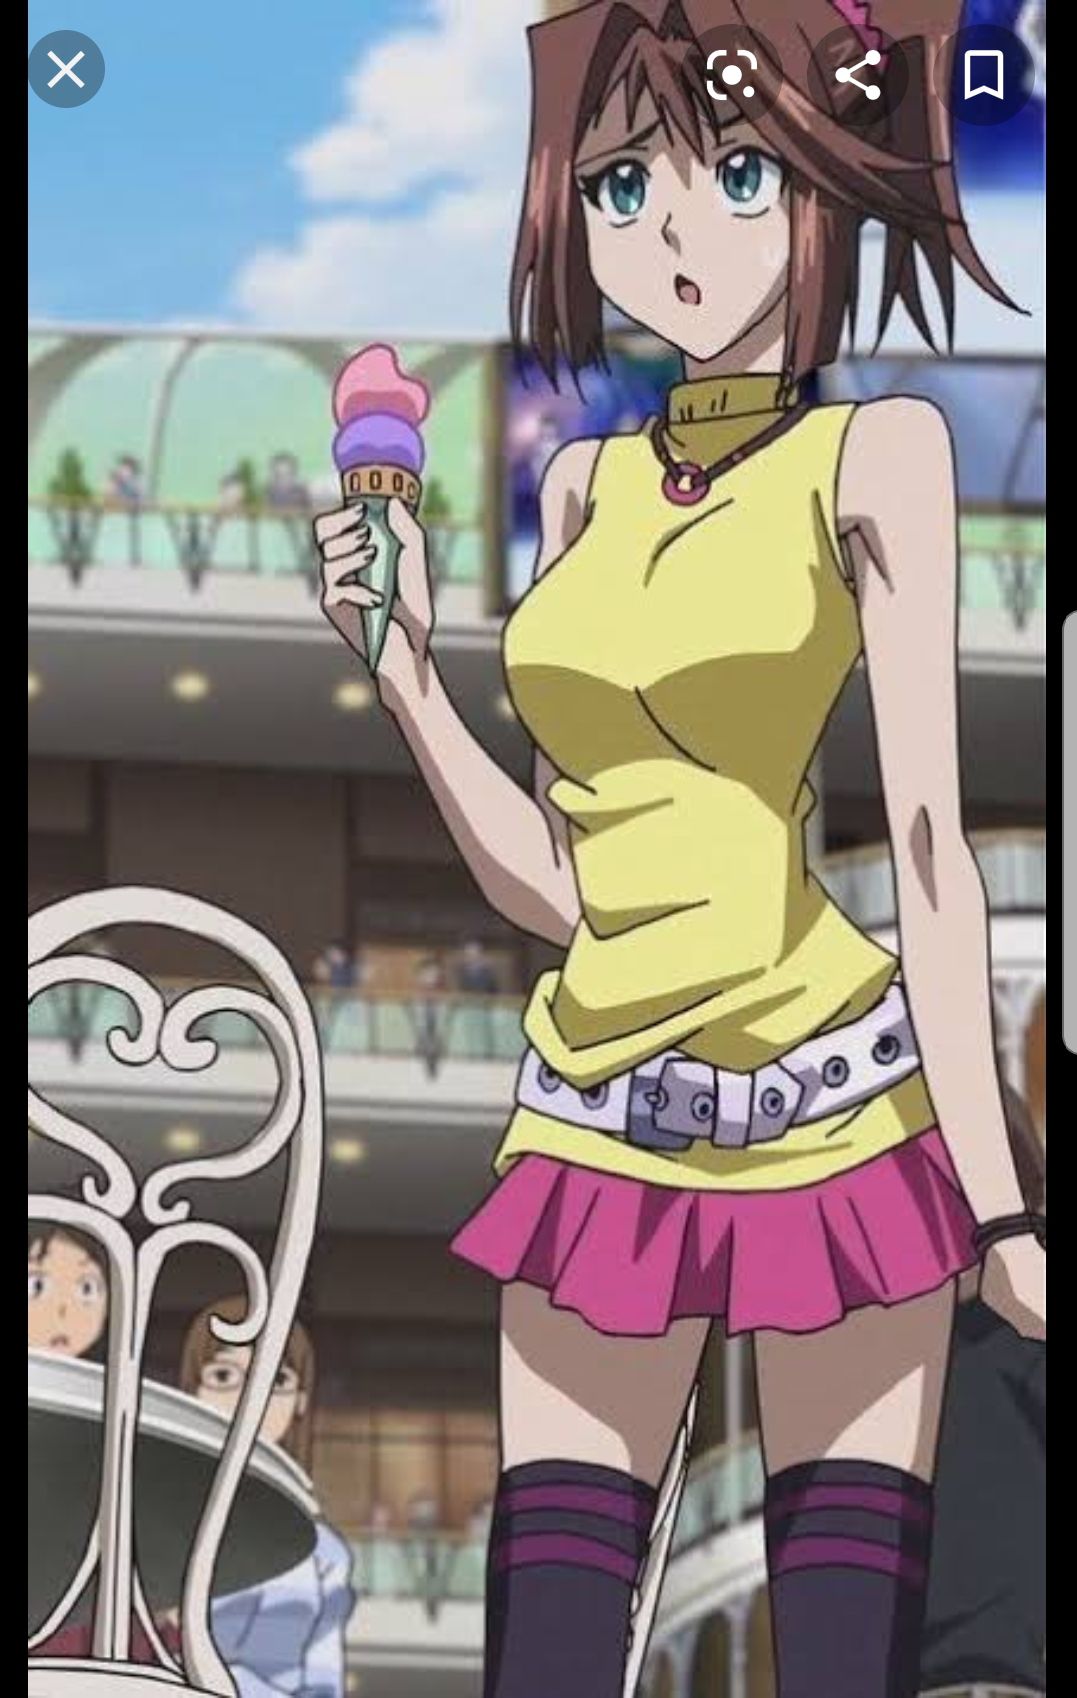 [Image] Why did Yu-Gi-Oh's Kyoko become so naughty? 10